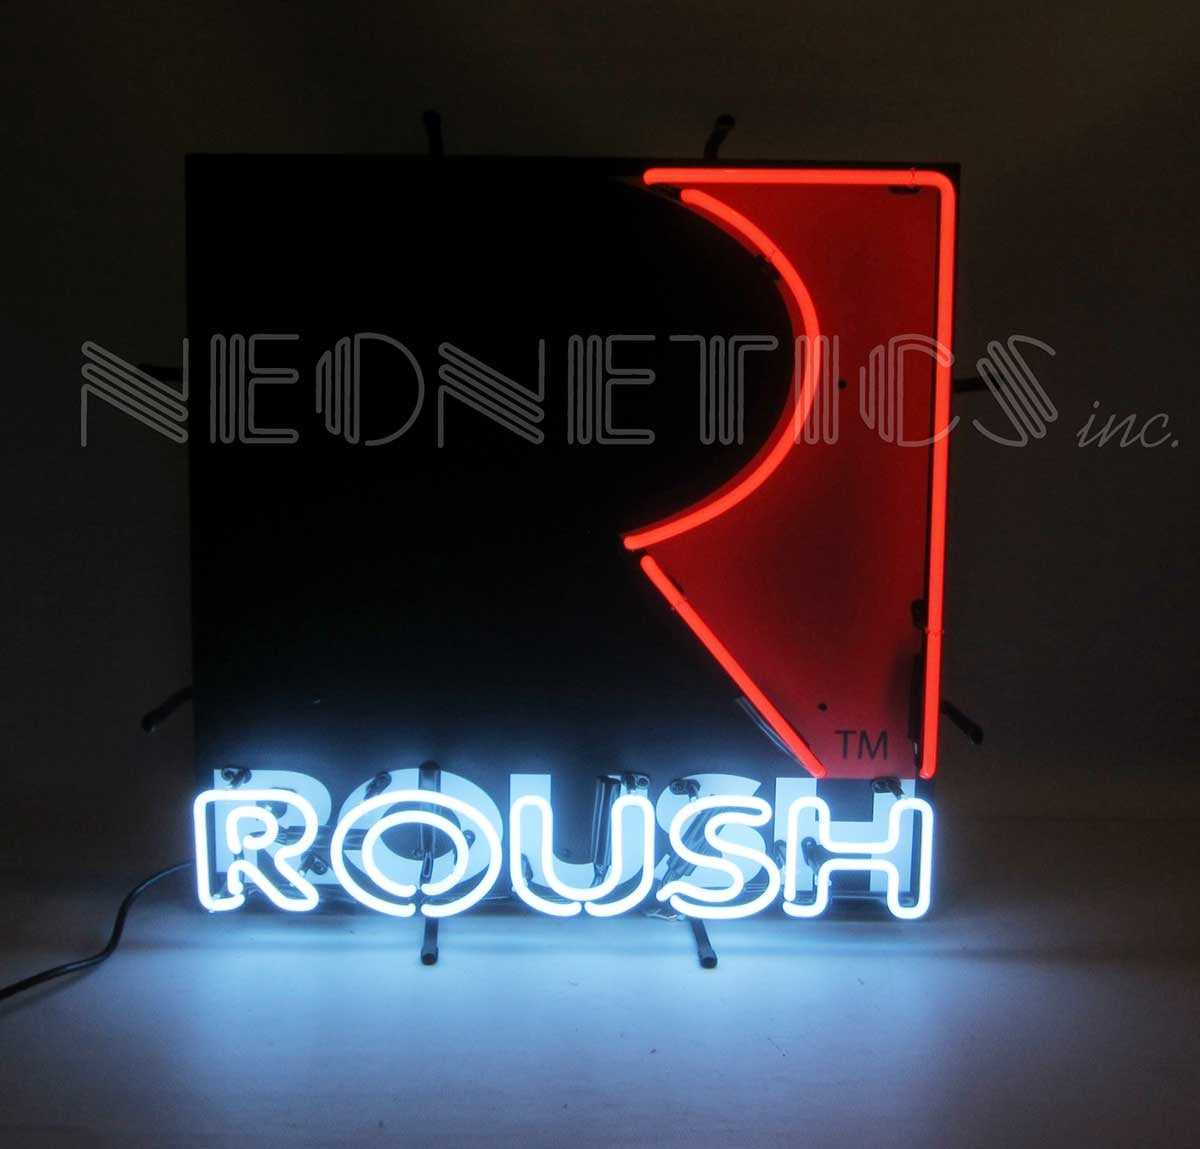 Roush Performance R Logo 24" x 24" Red Black & White Neon Light Up Sign